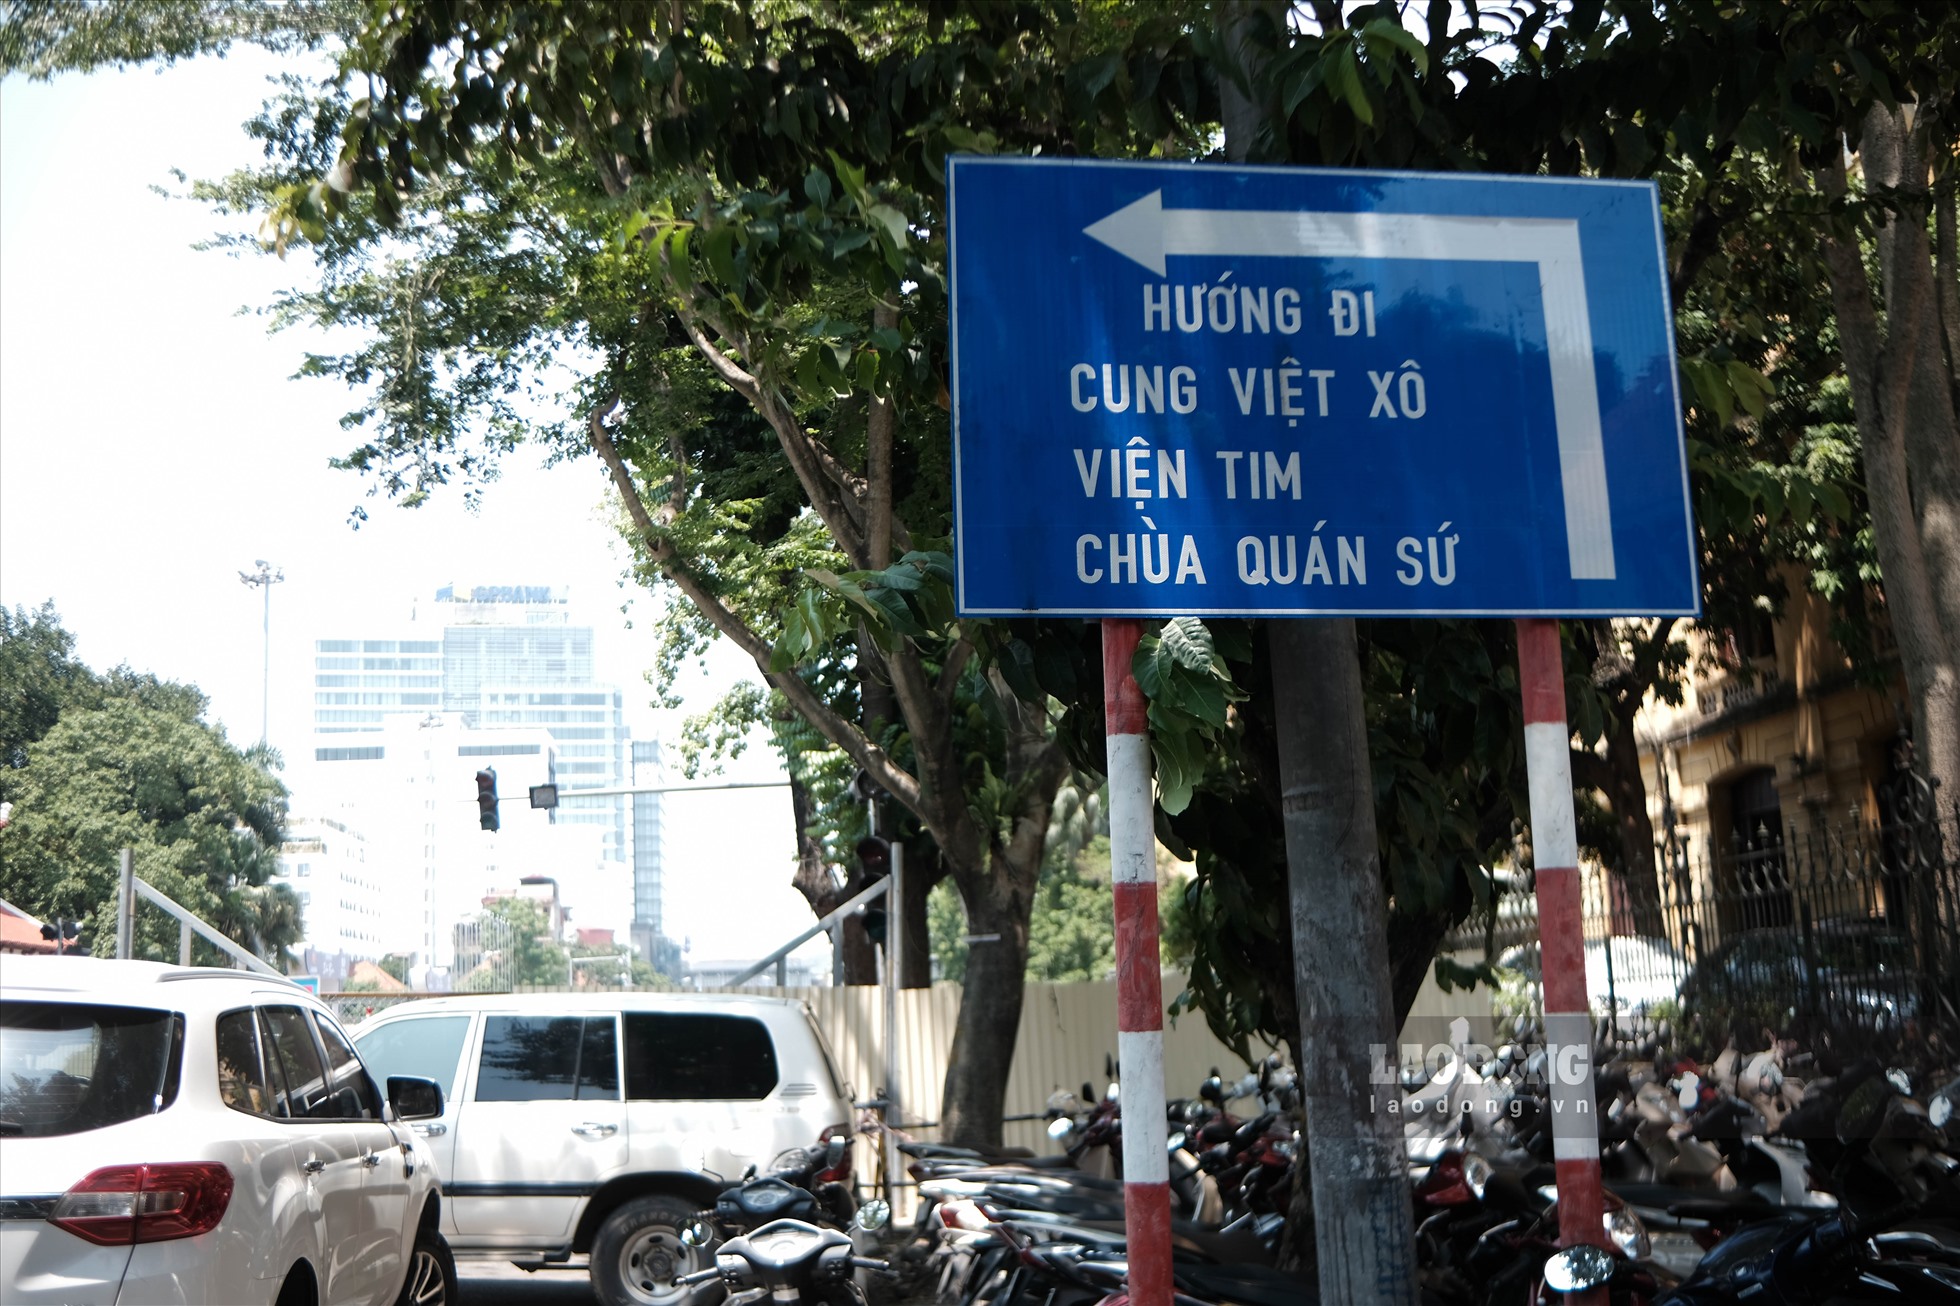 Xung quanh khu vực này, các bảng chỉ dẫn đường đi và trên các thanh chắn đã được trang bị thêm đèn tín hiệuđã được lắp đặt để đảm bảo người dân có thể tham gia giao thông thuận tiện nhất.